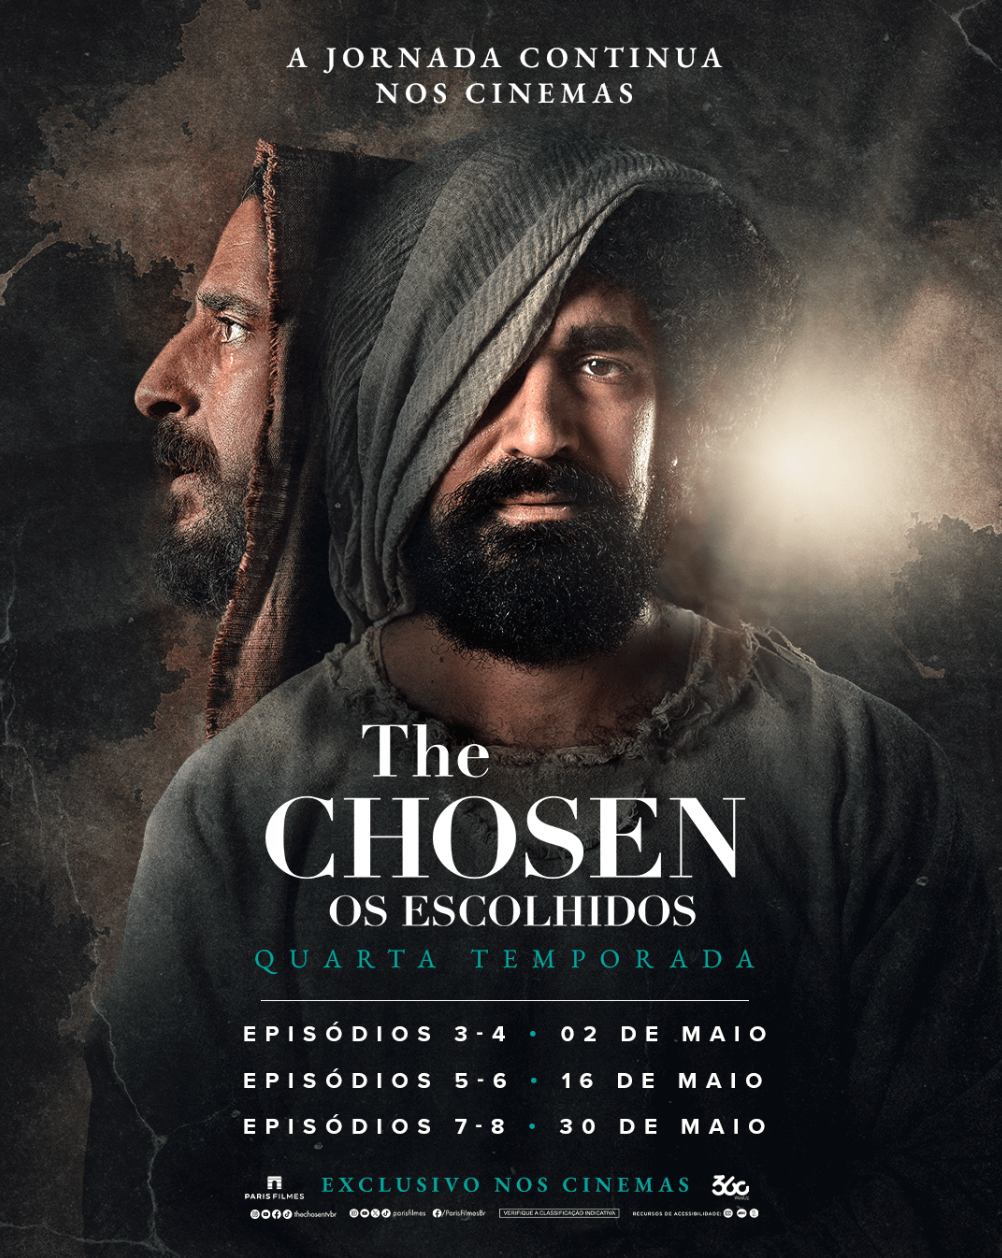 The Chosen: Os Escolhidos EP.5 E 6